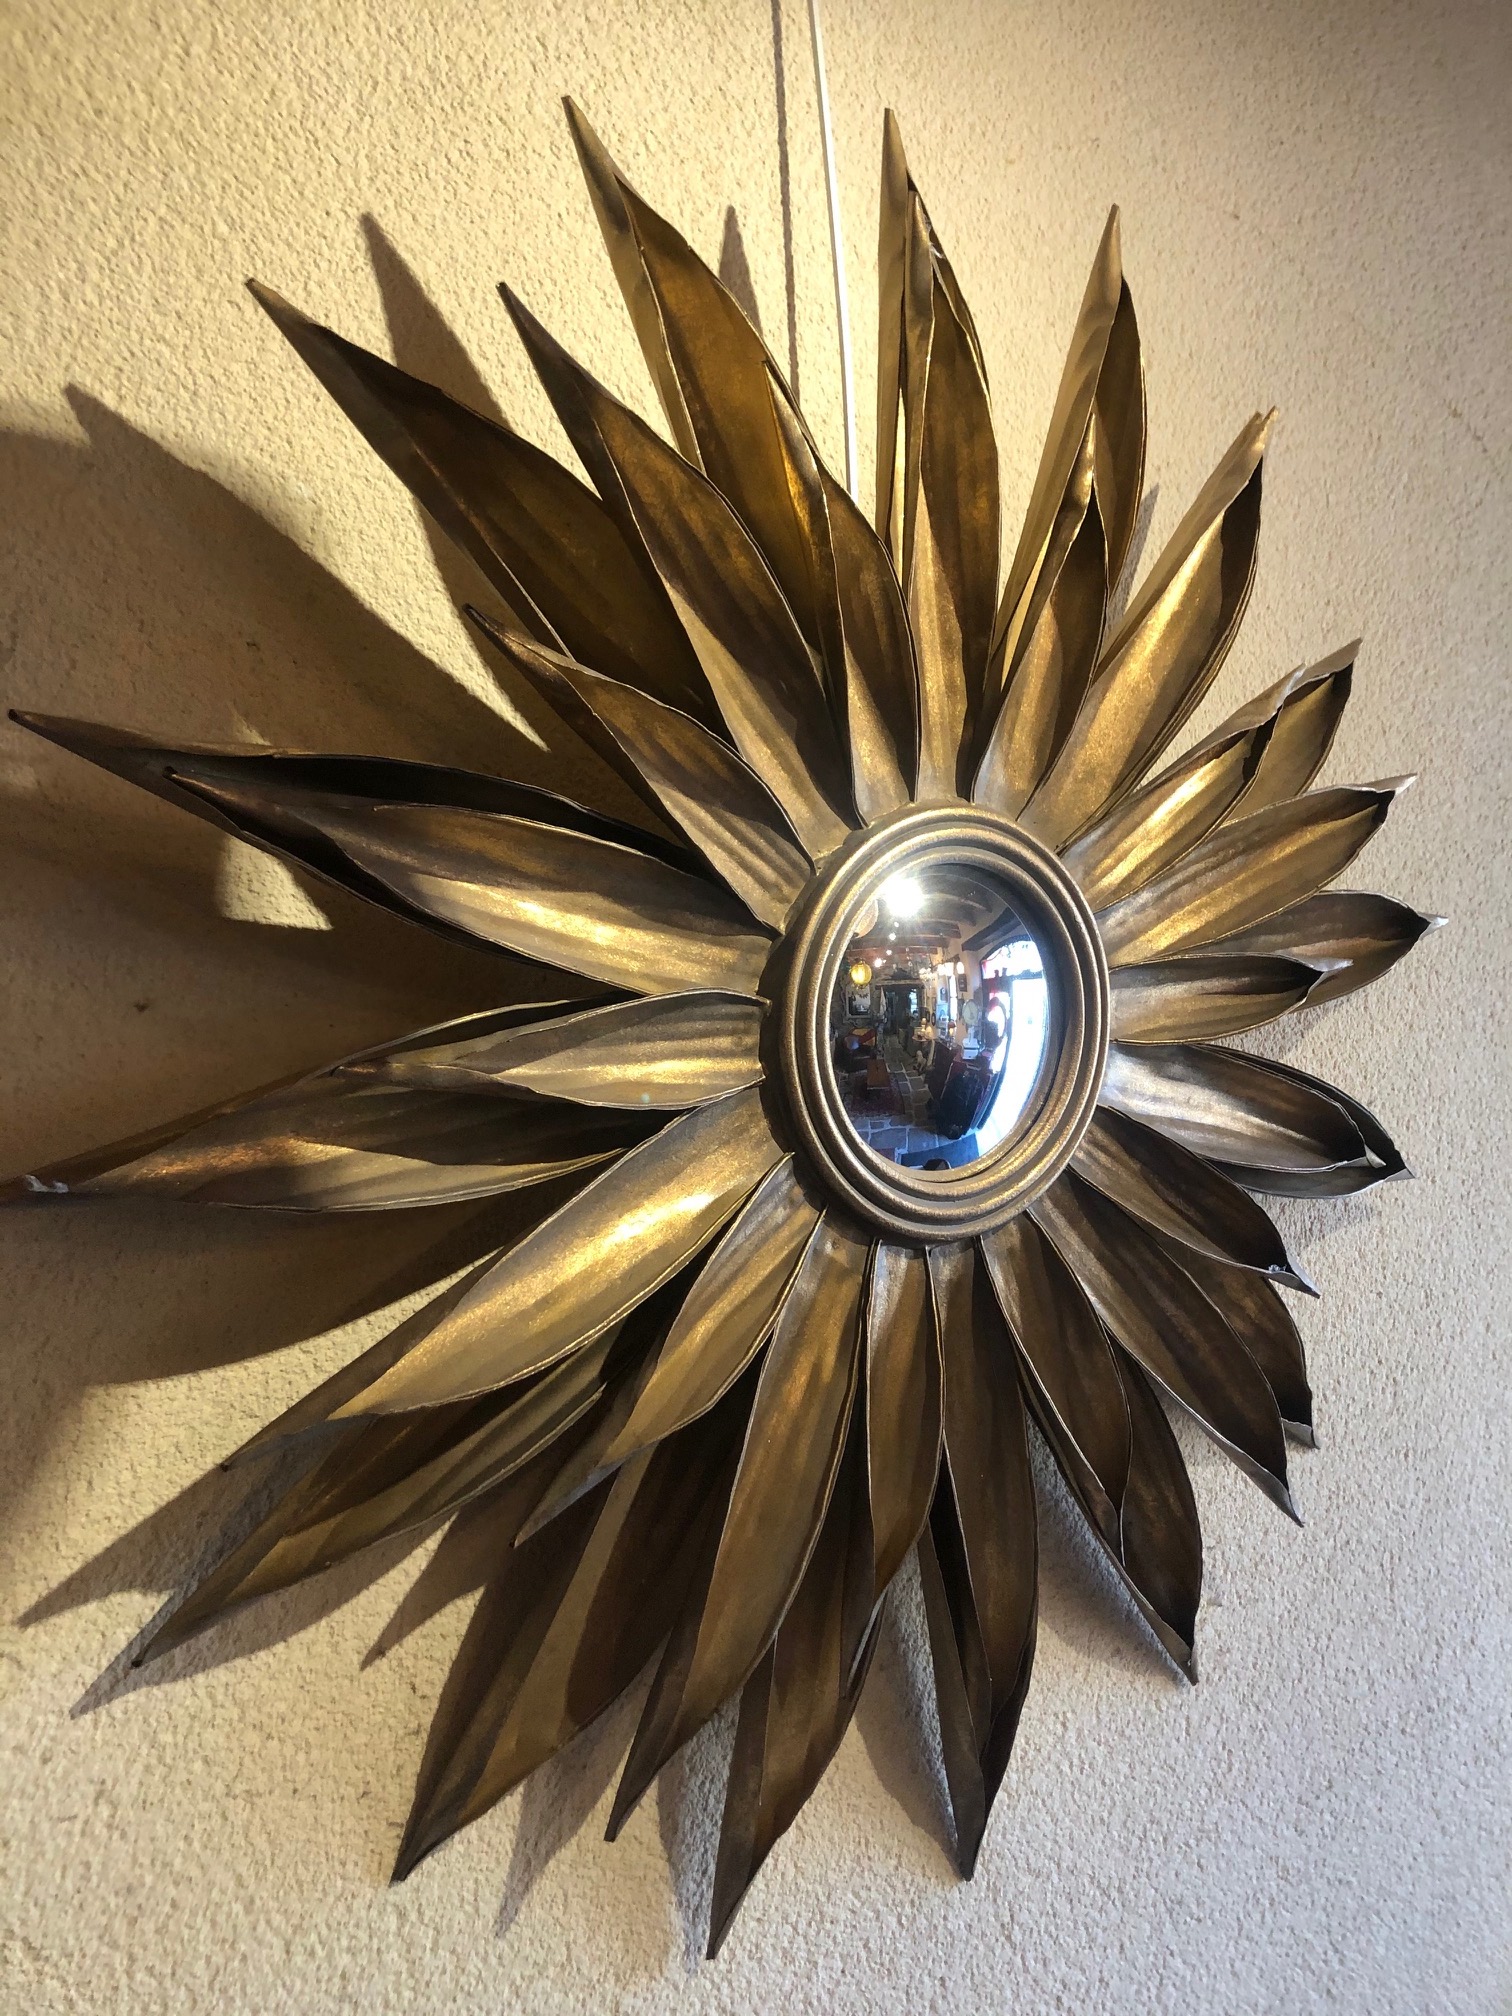 Miroir de sorcière - La Grange, Meubles neufs et anciens au Conquet